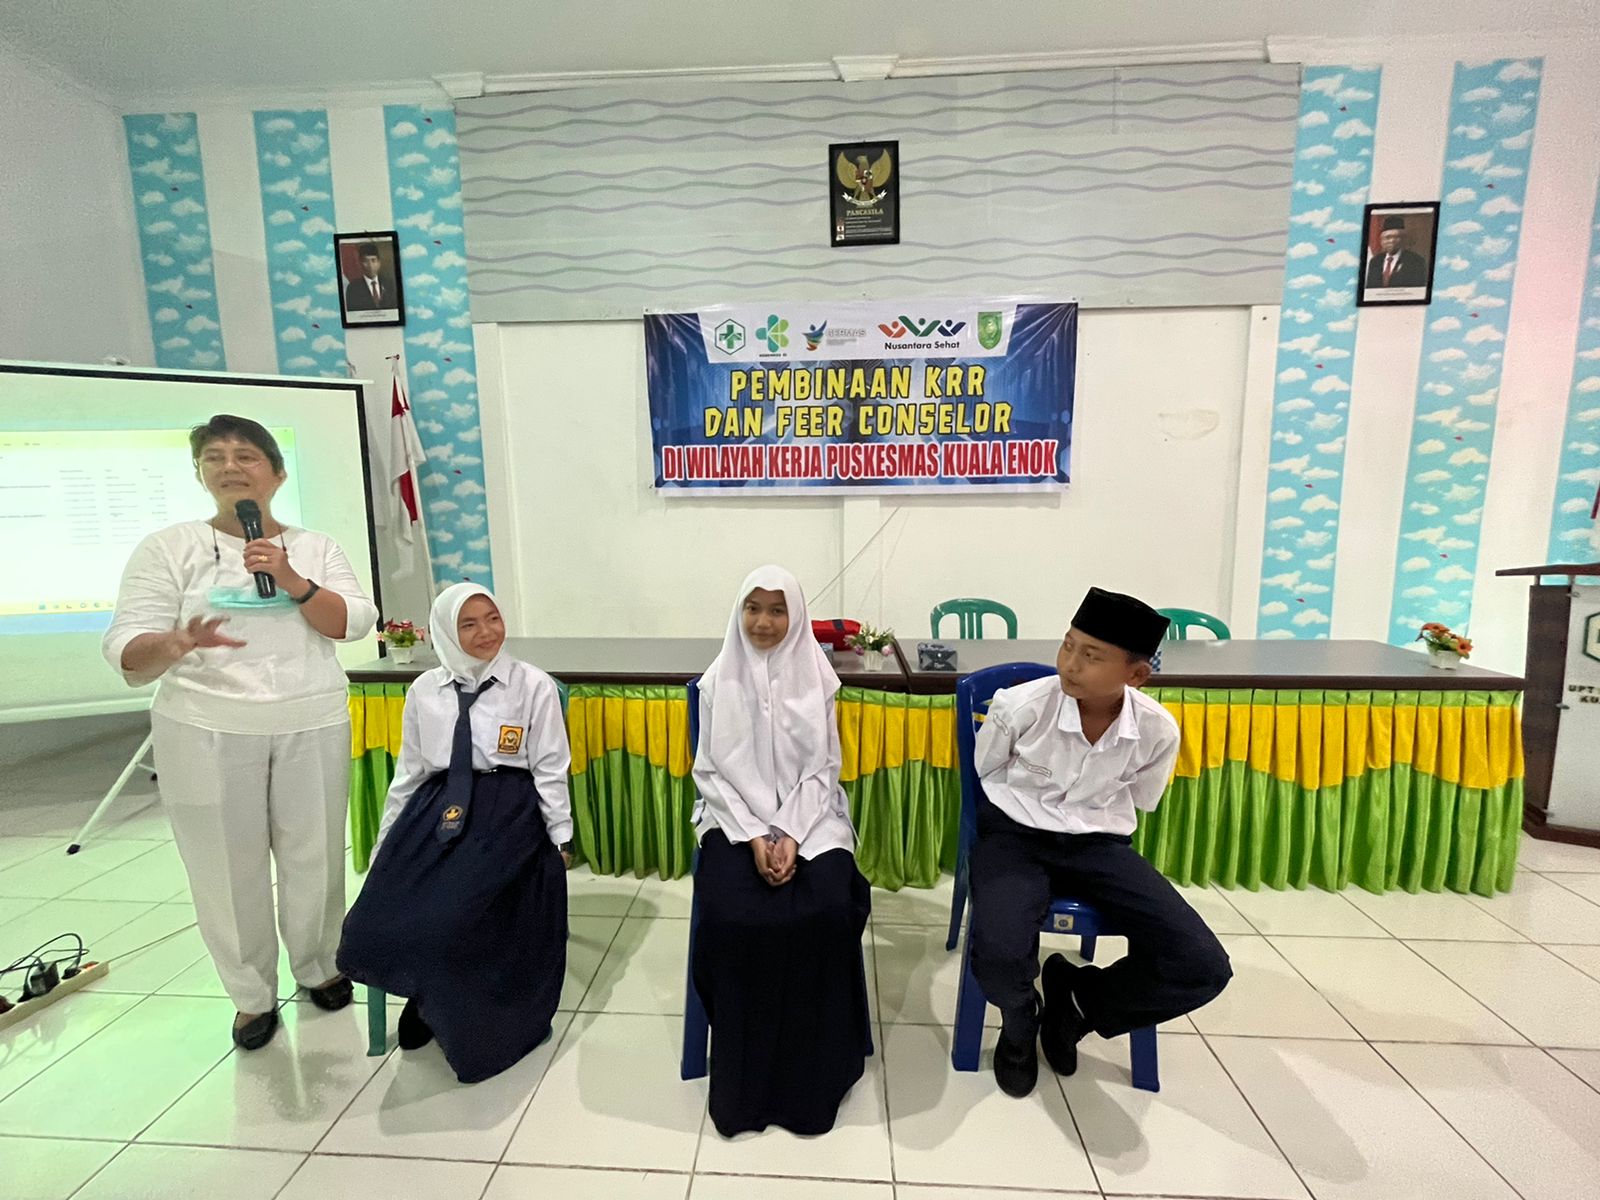 UPT Puskesmas Kuala Enok Gelar Pembinaan KRR dan Peer Conselor Bagi Remaja